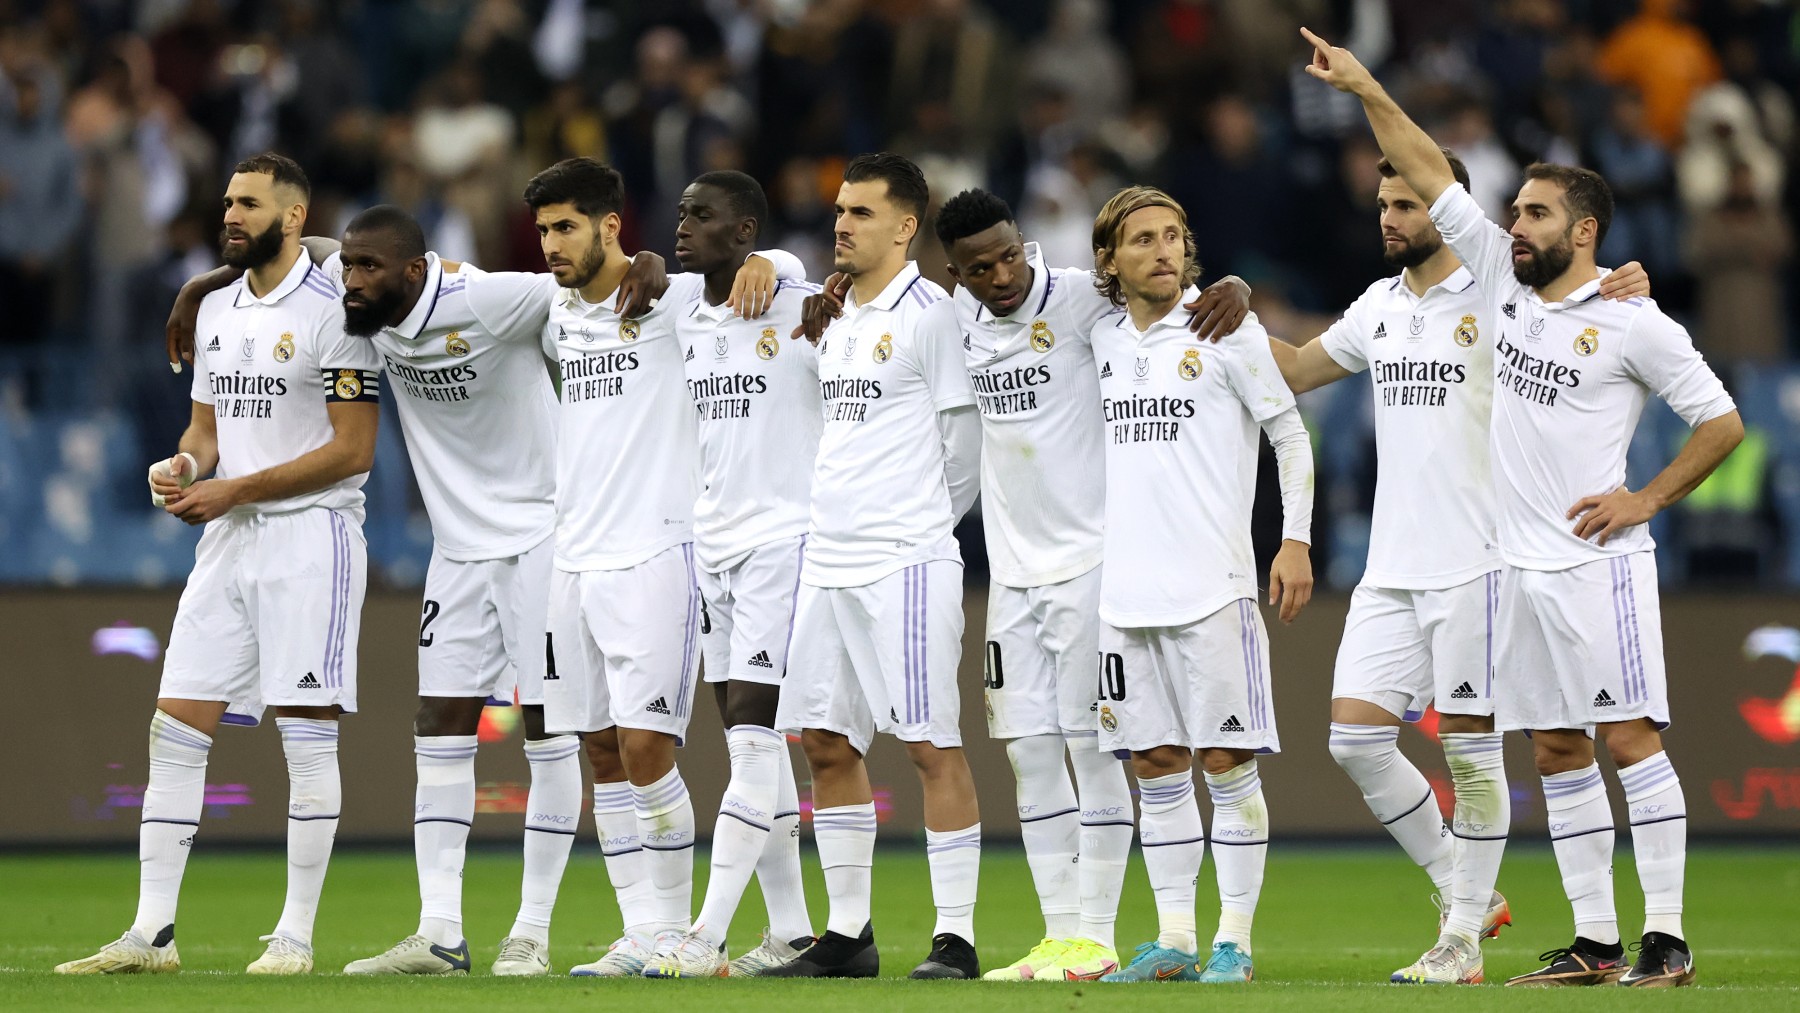 Los jugadores del Real Madrid en la Supercopa de España. (Getty)